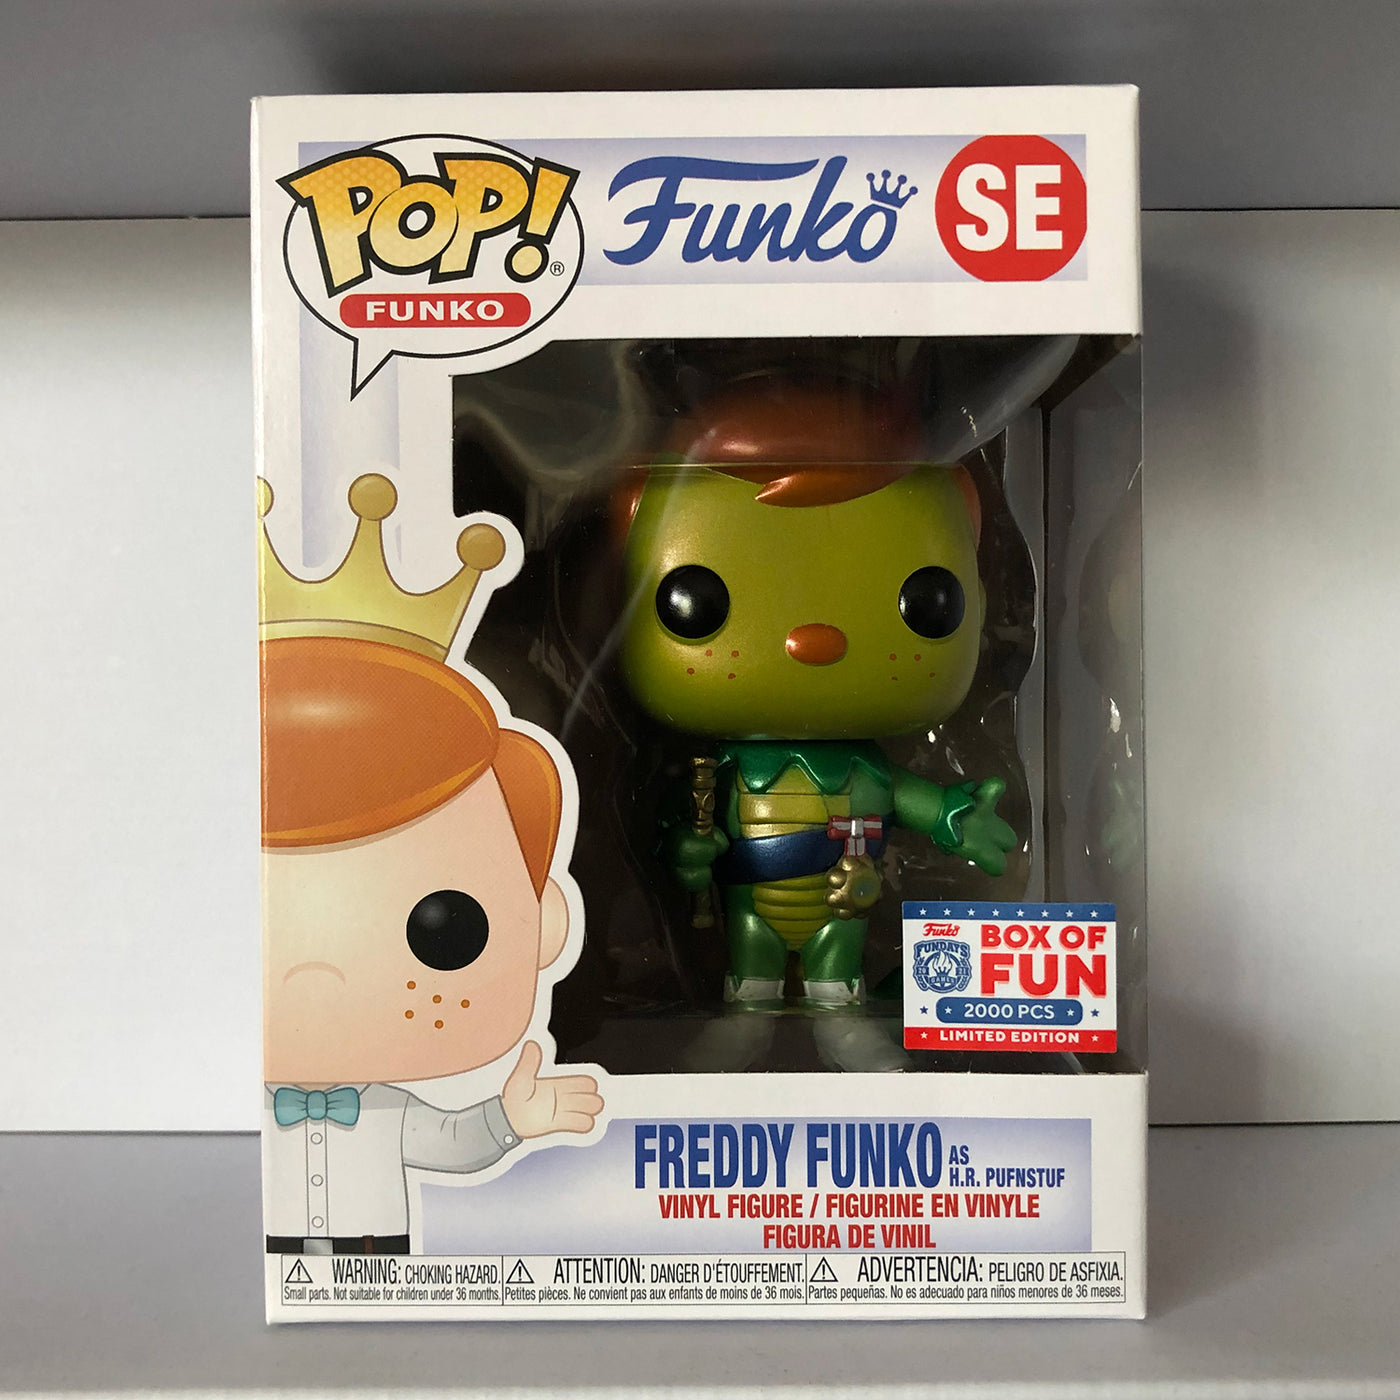 Freddy Funko as H.R. Pufnstuf METALLIC (Box of Fun) LE 2000